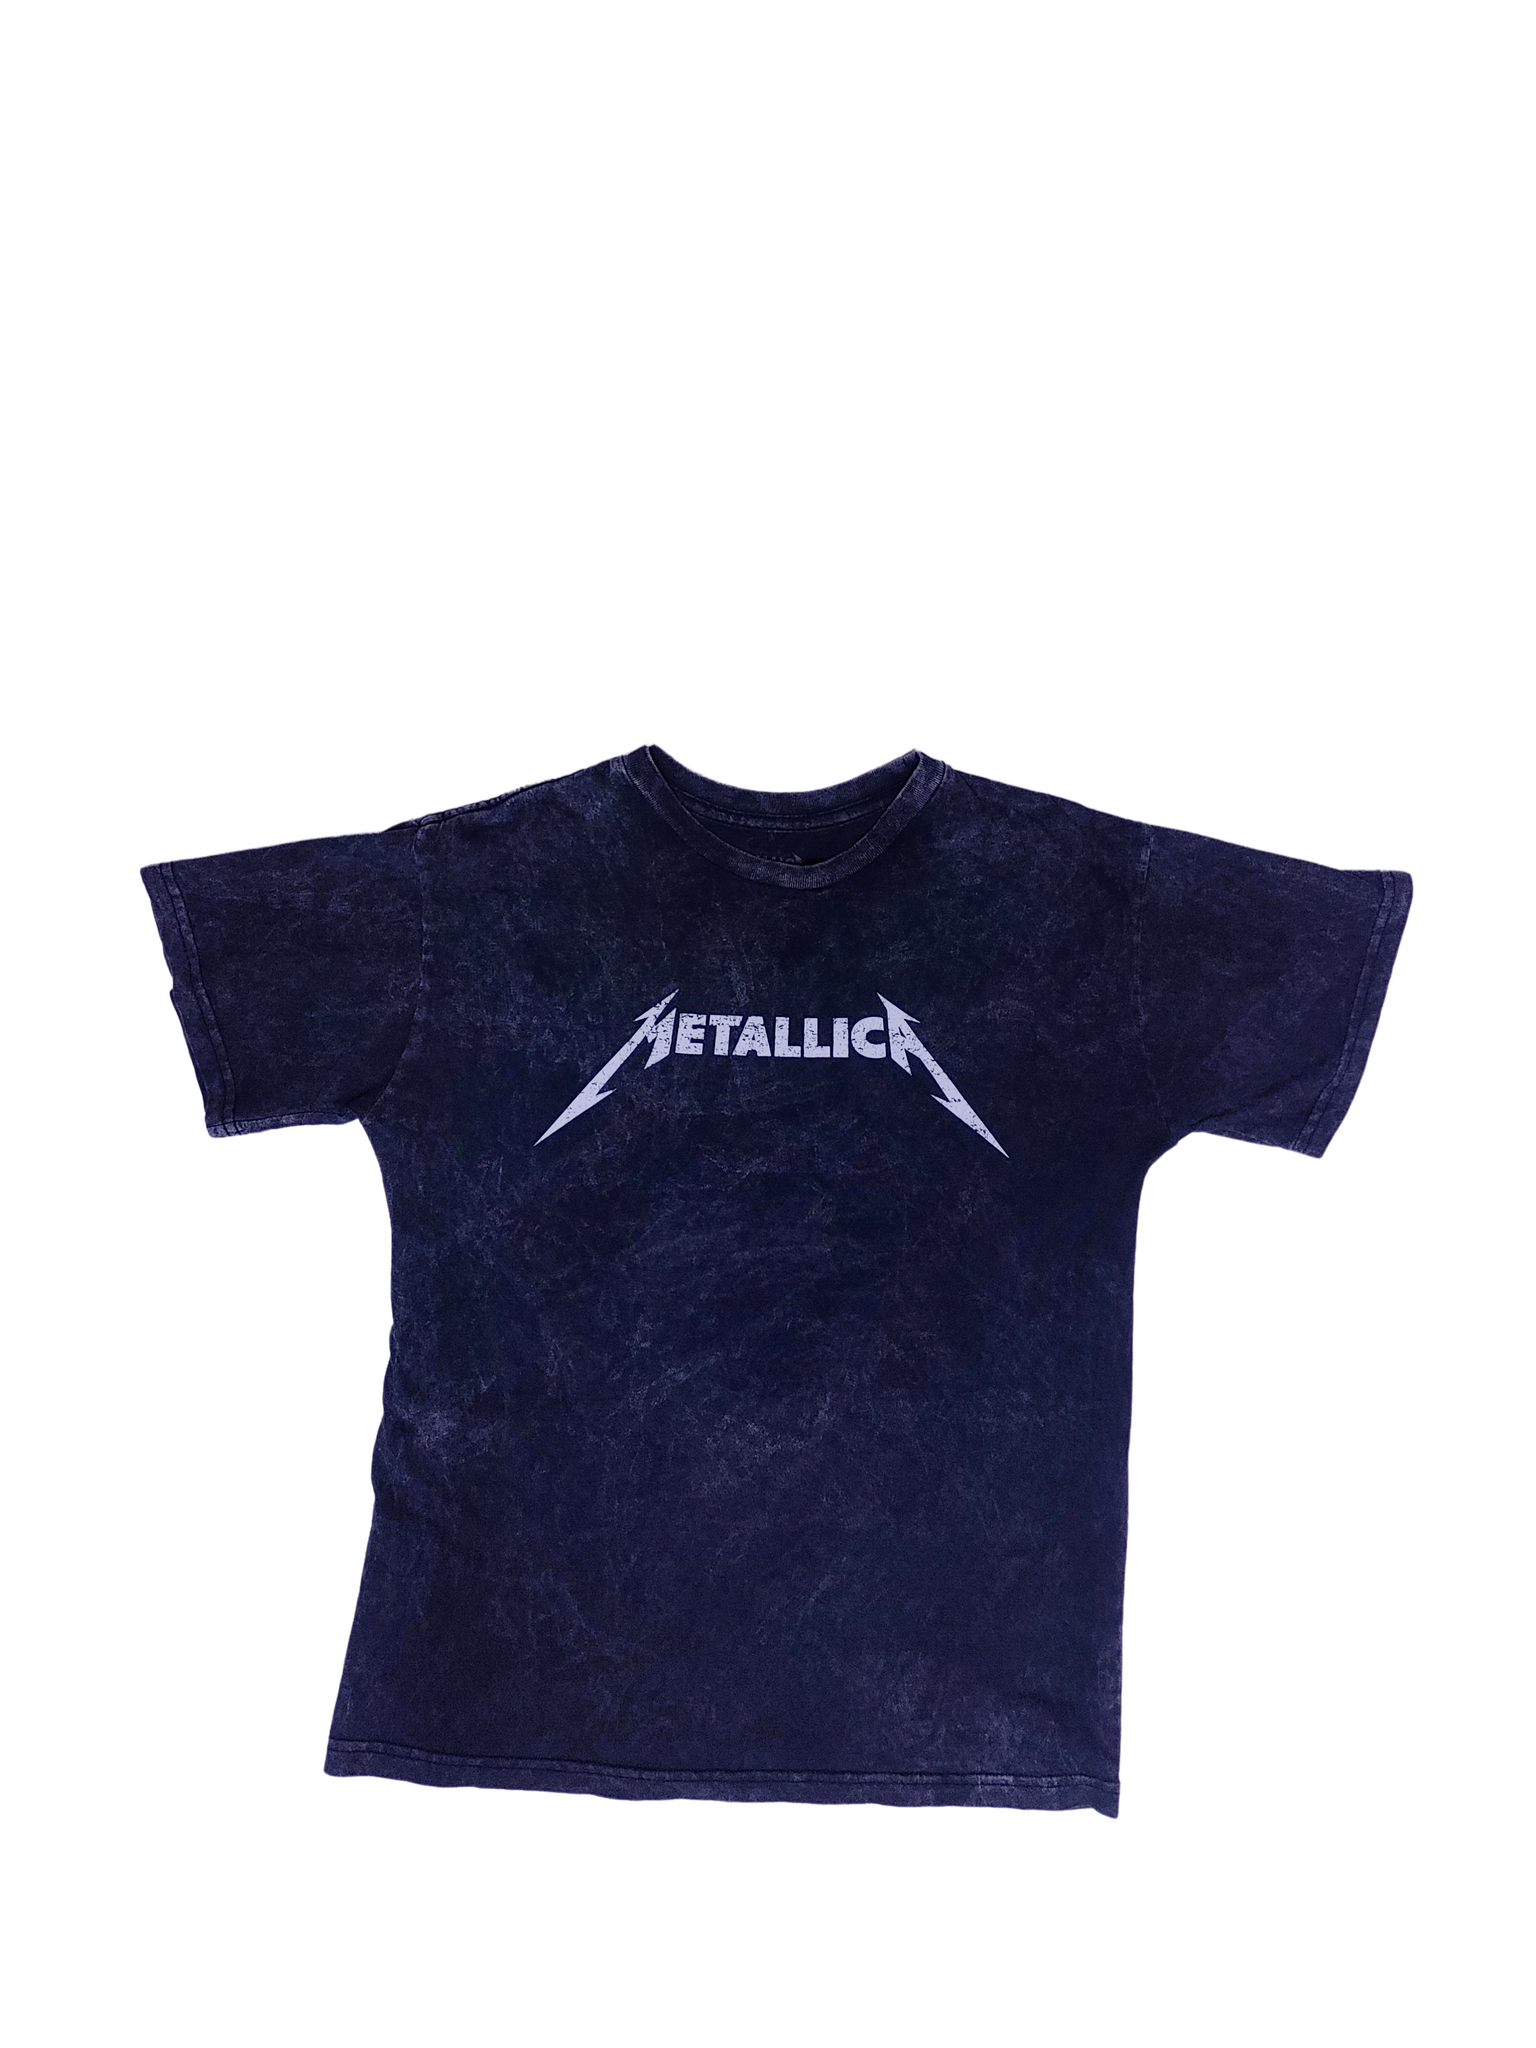 Y2K Stonewash Metallica T-Shirt - Size M – Good Juice Box Vintage